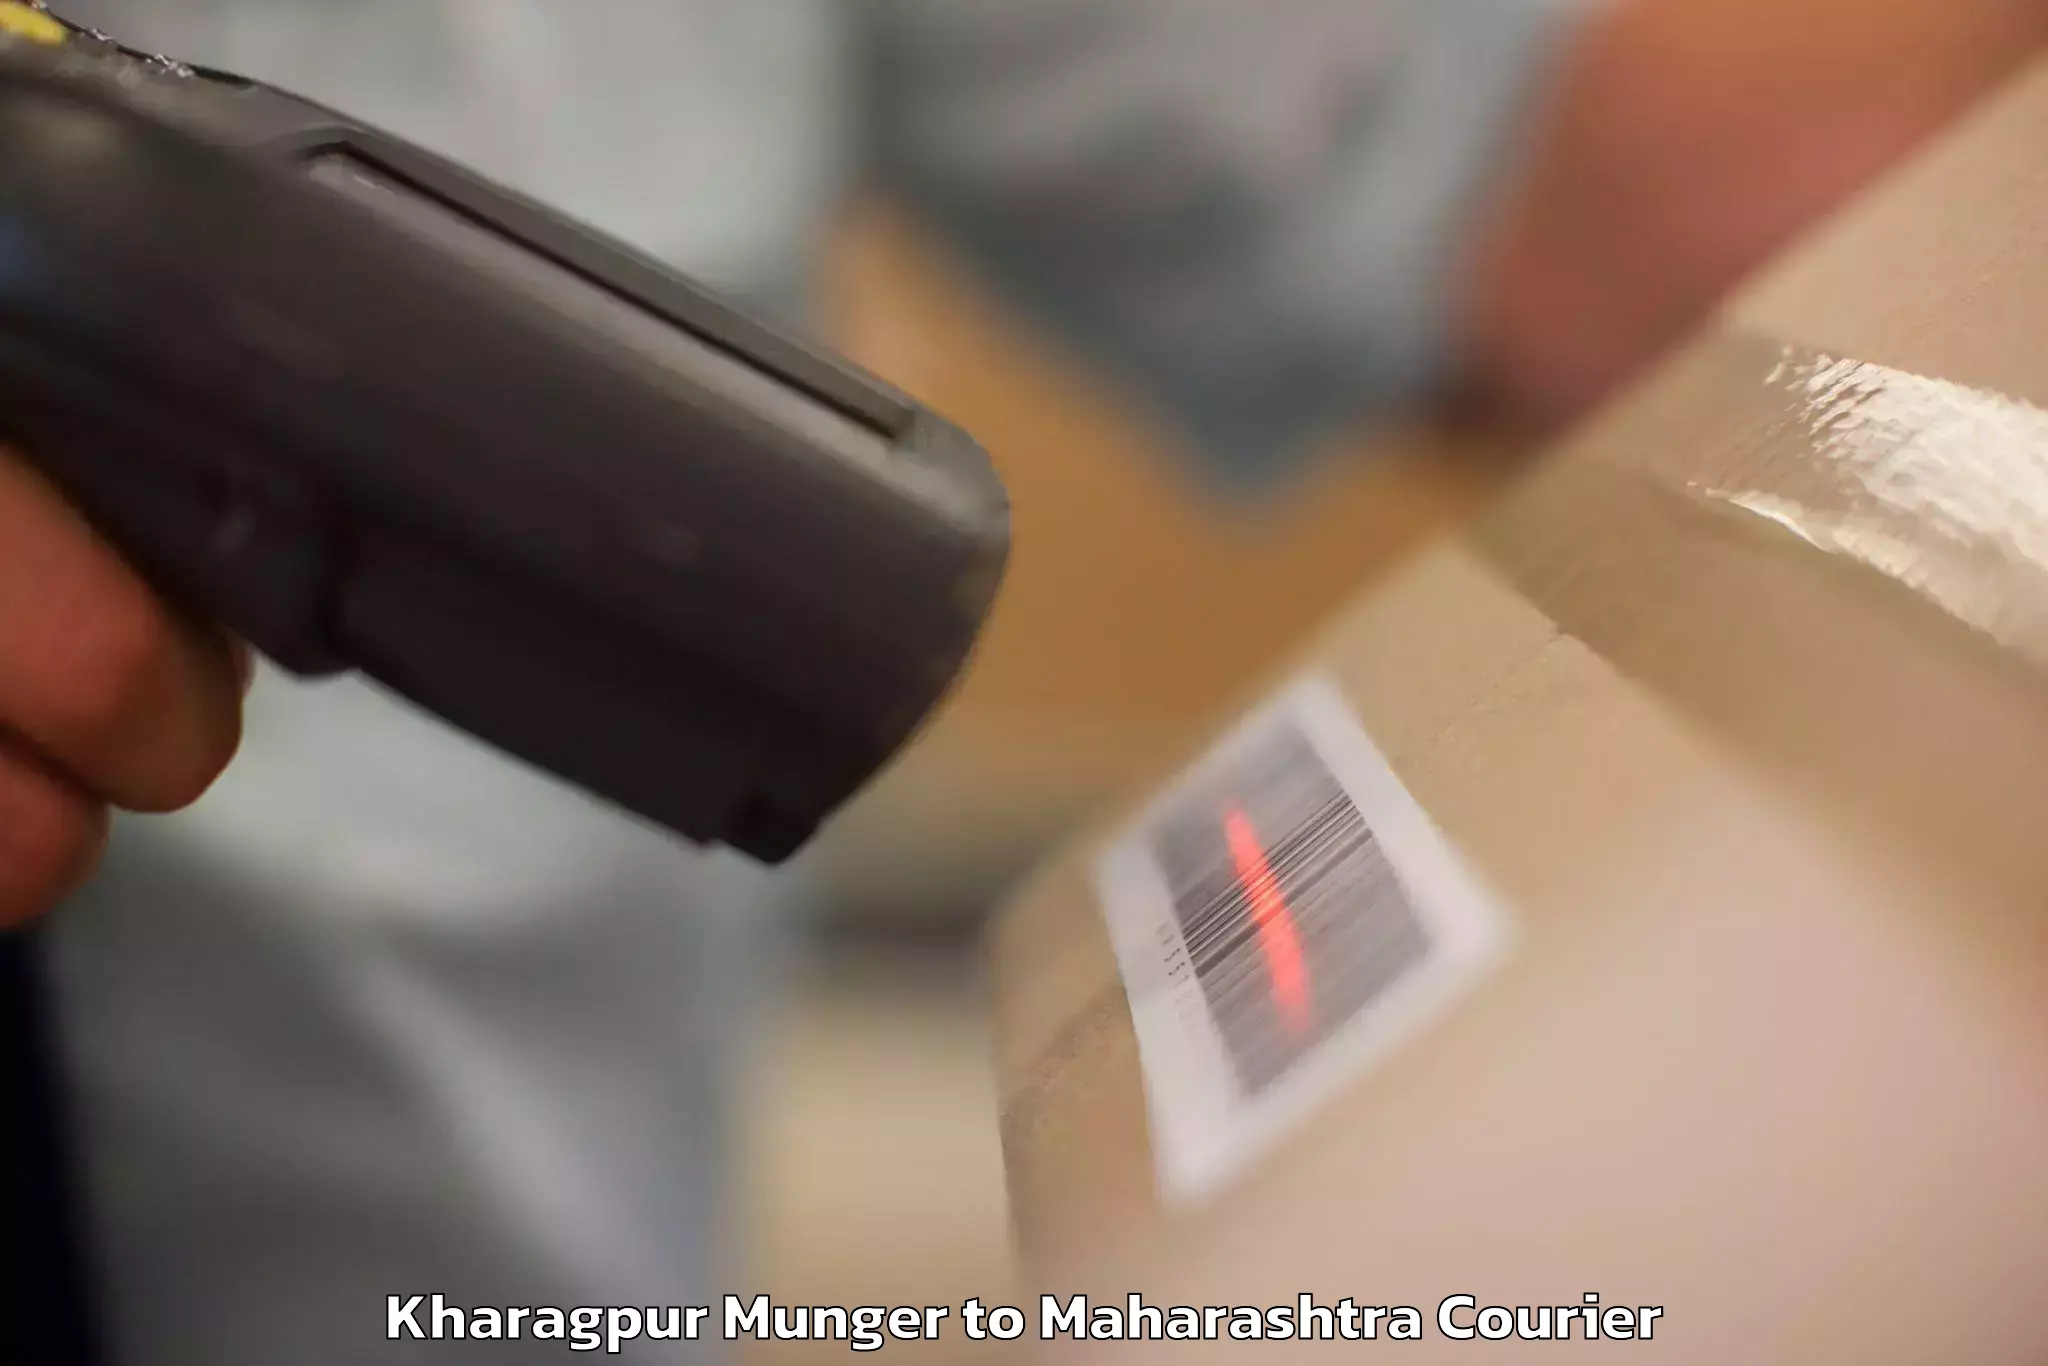 Baggage transport professionals Kharagpur Munger to Uran Islampur